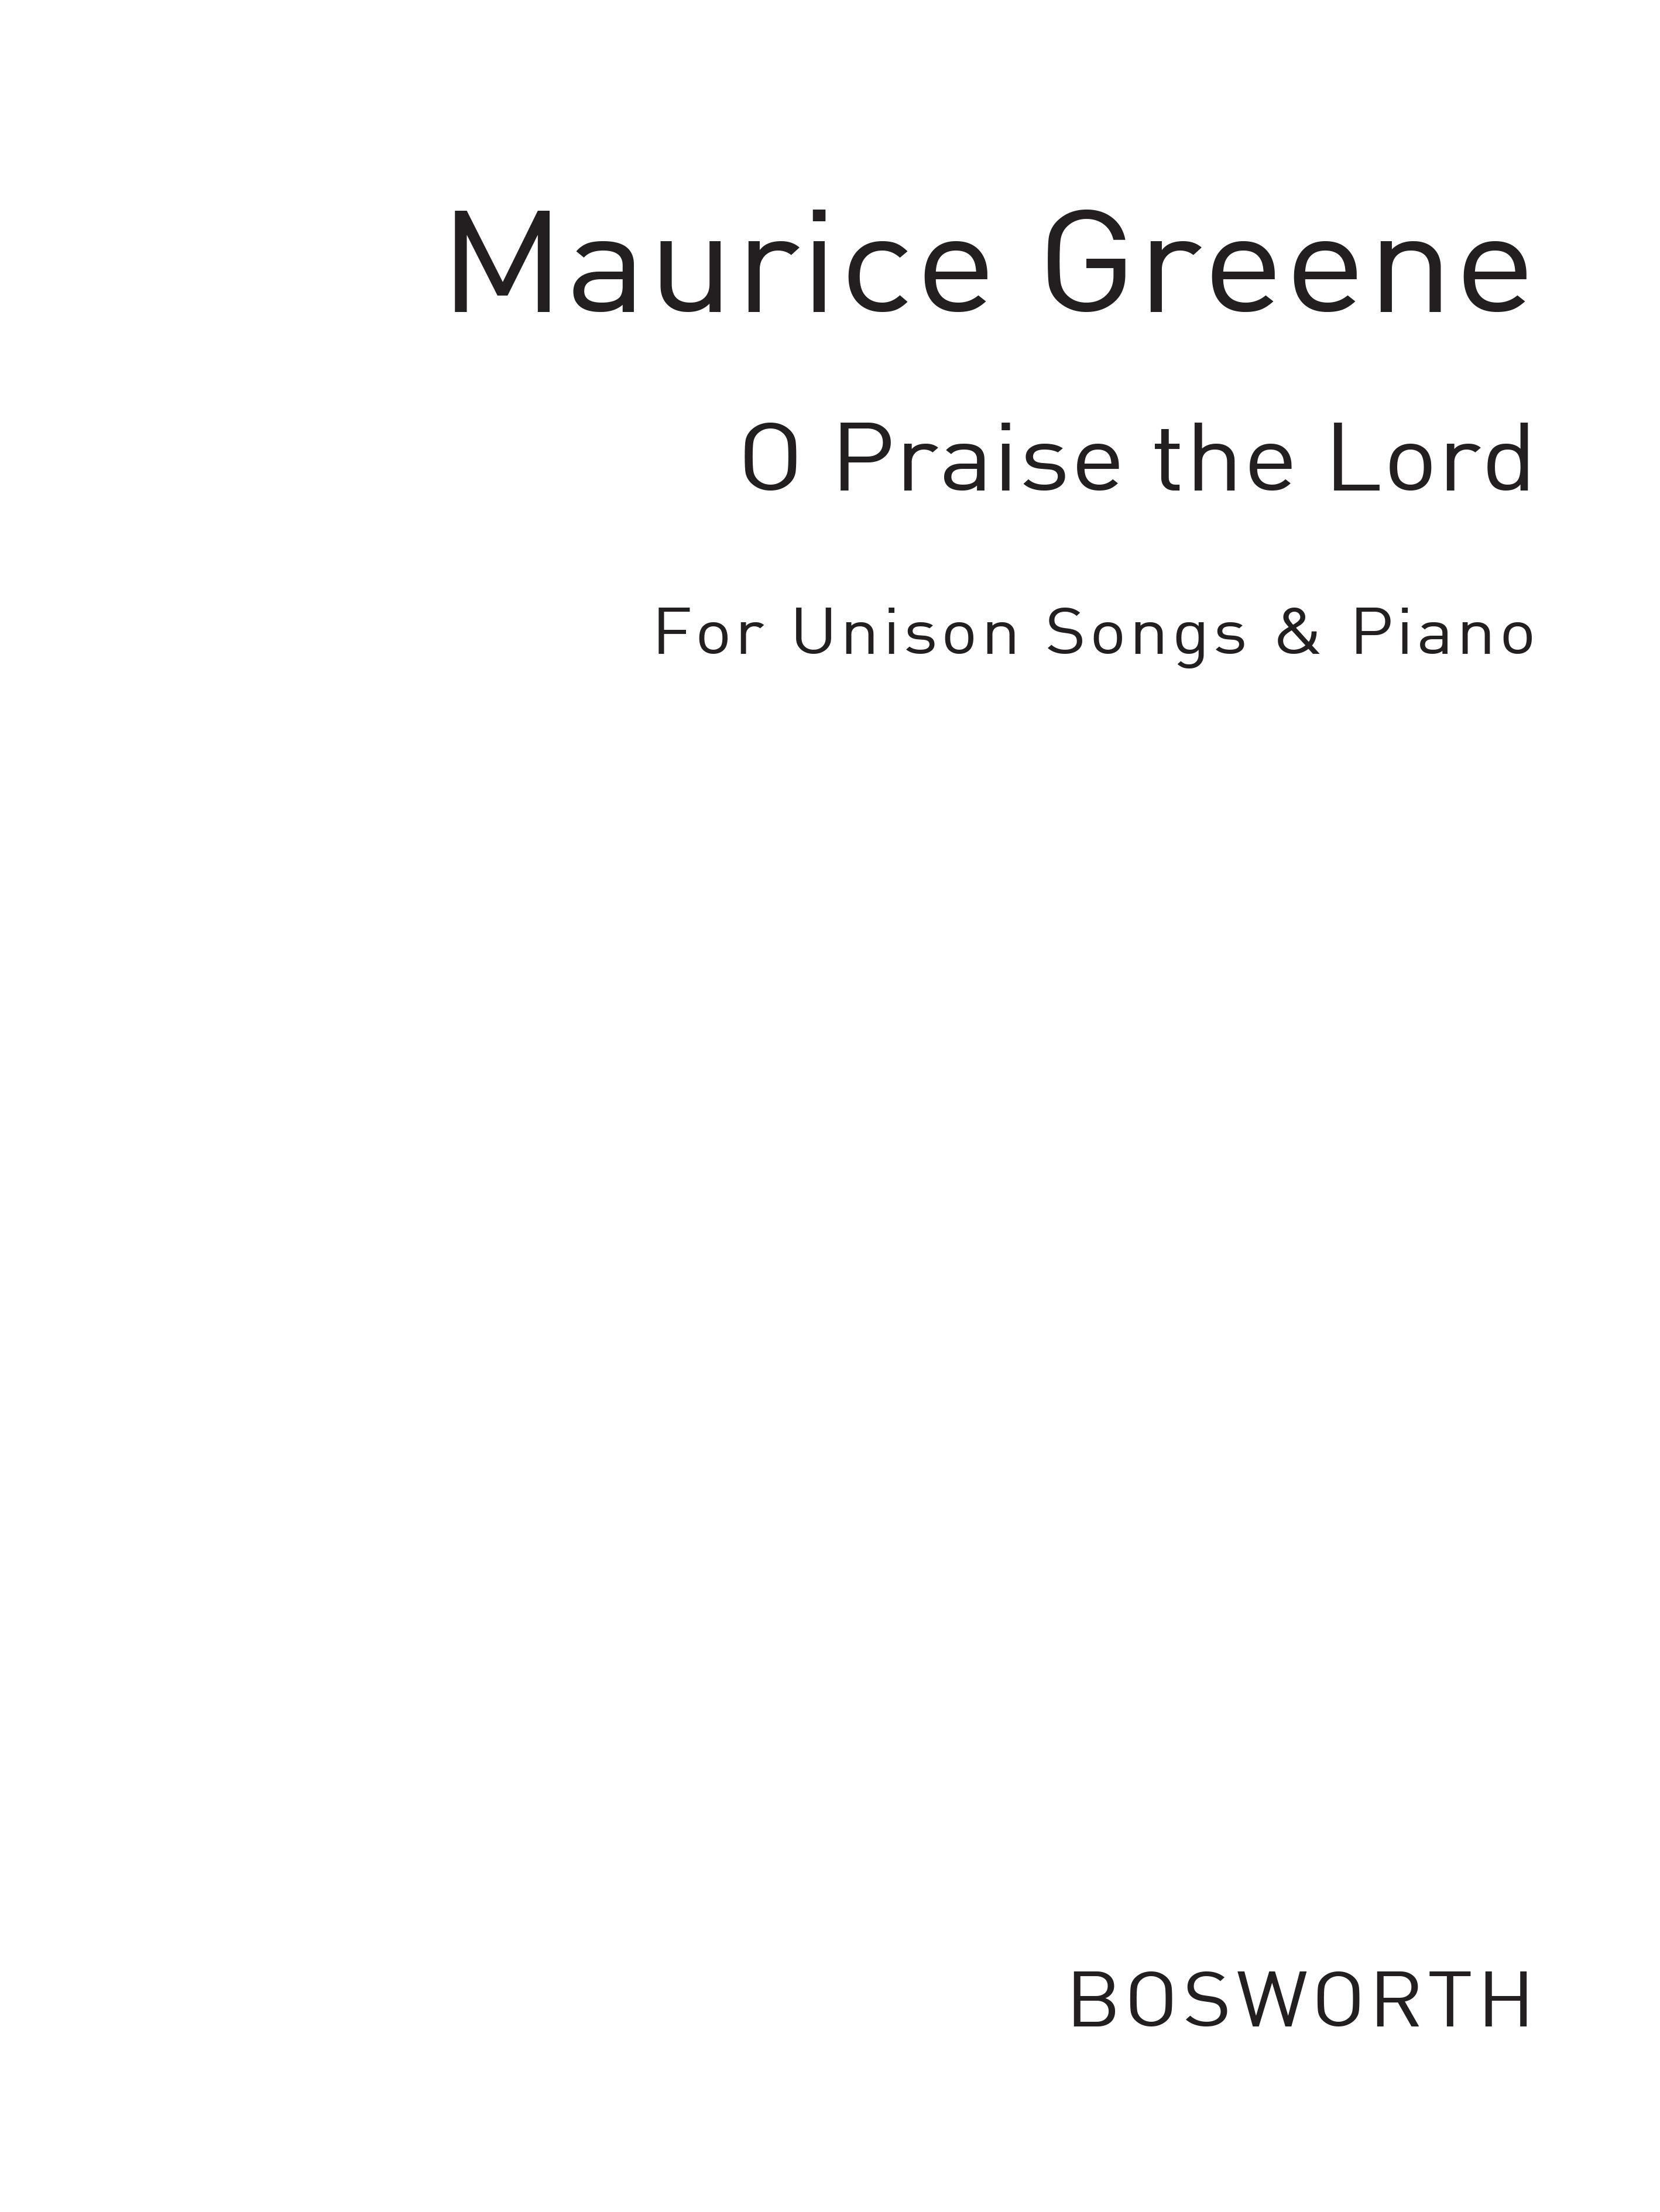 O Praise The Lord Roper Unison And Piano: Voice & Piano: Score